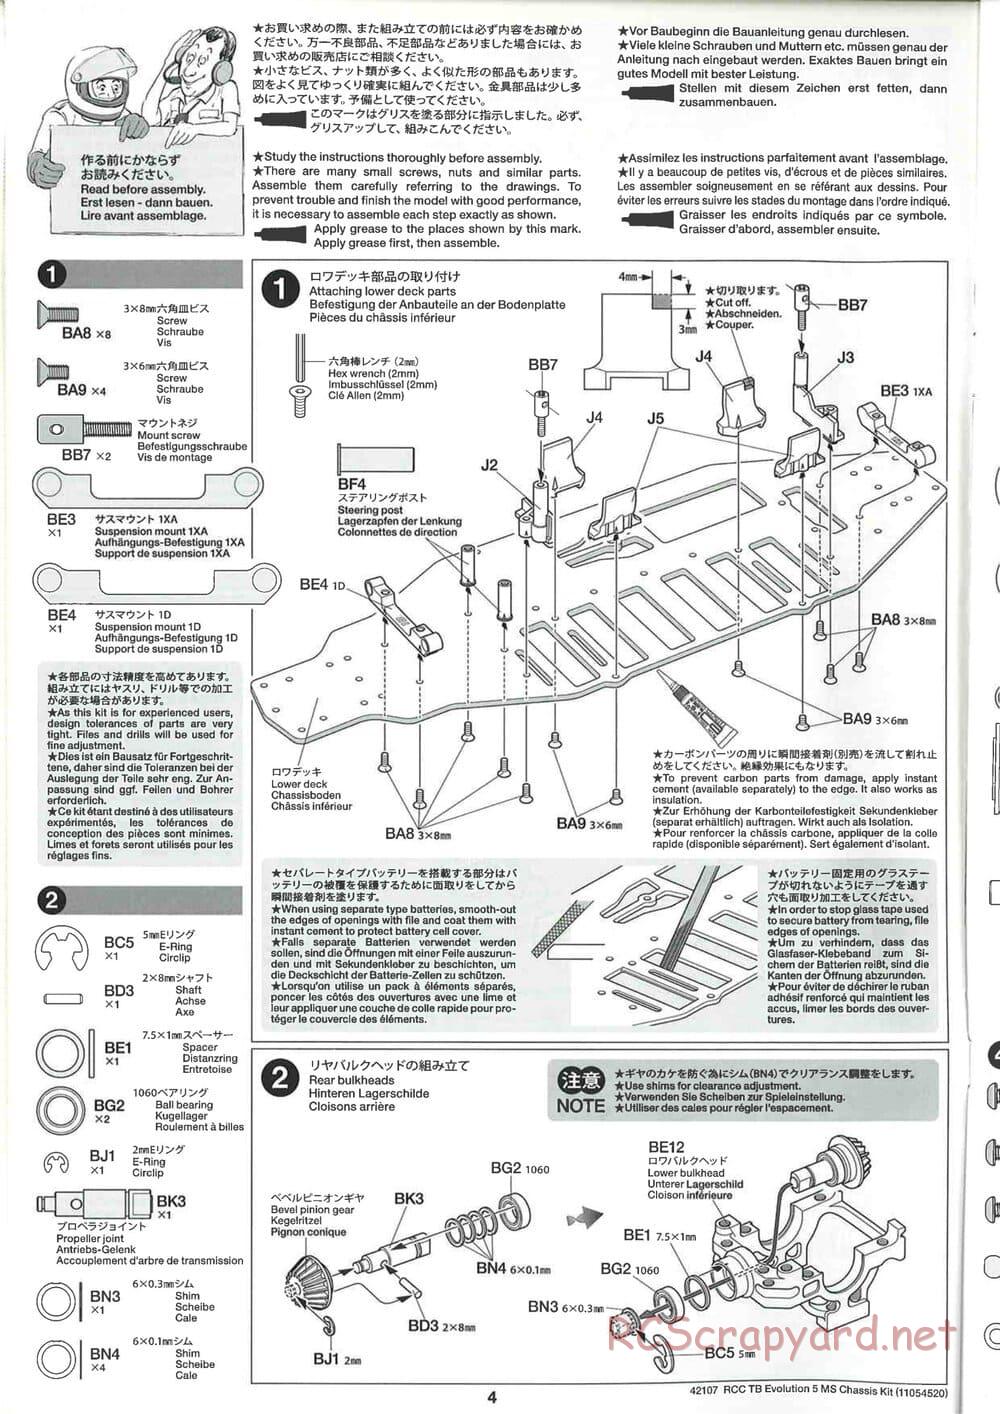 Tamiya - TB Evolution 5 MS Chassis - Manual - Page 4